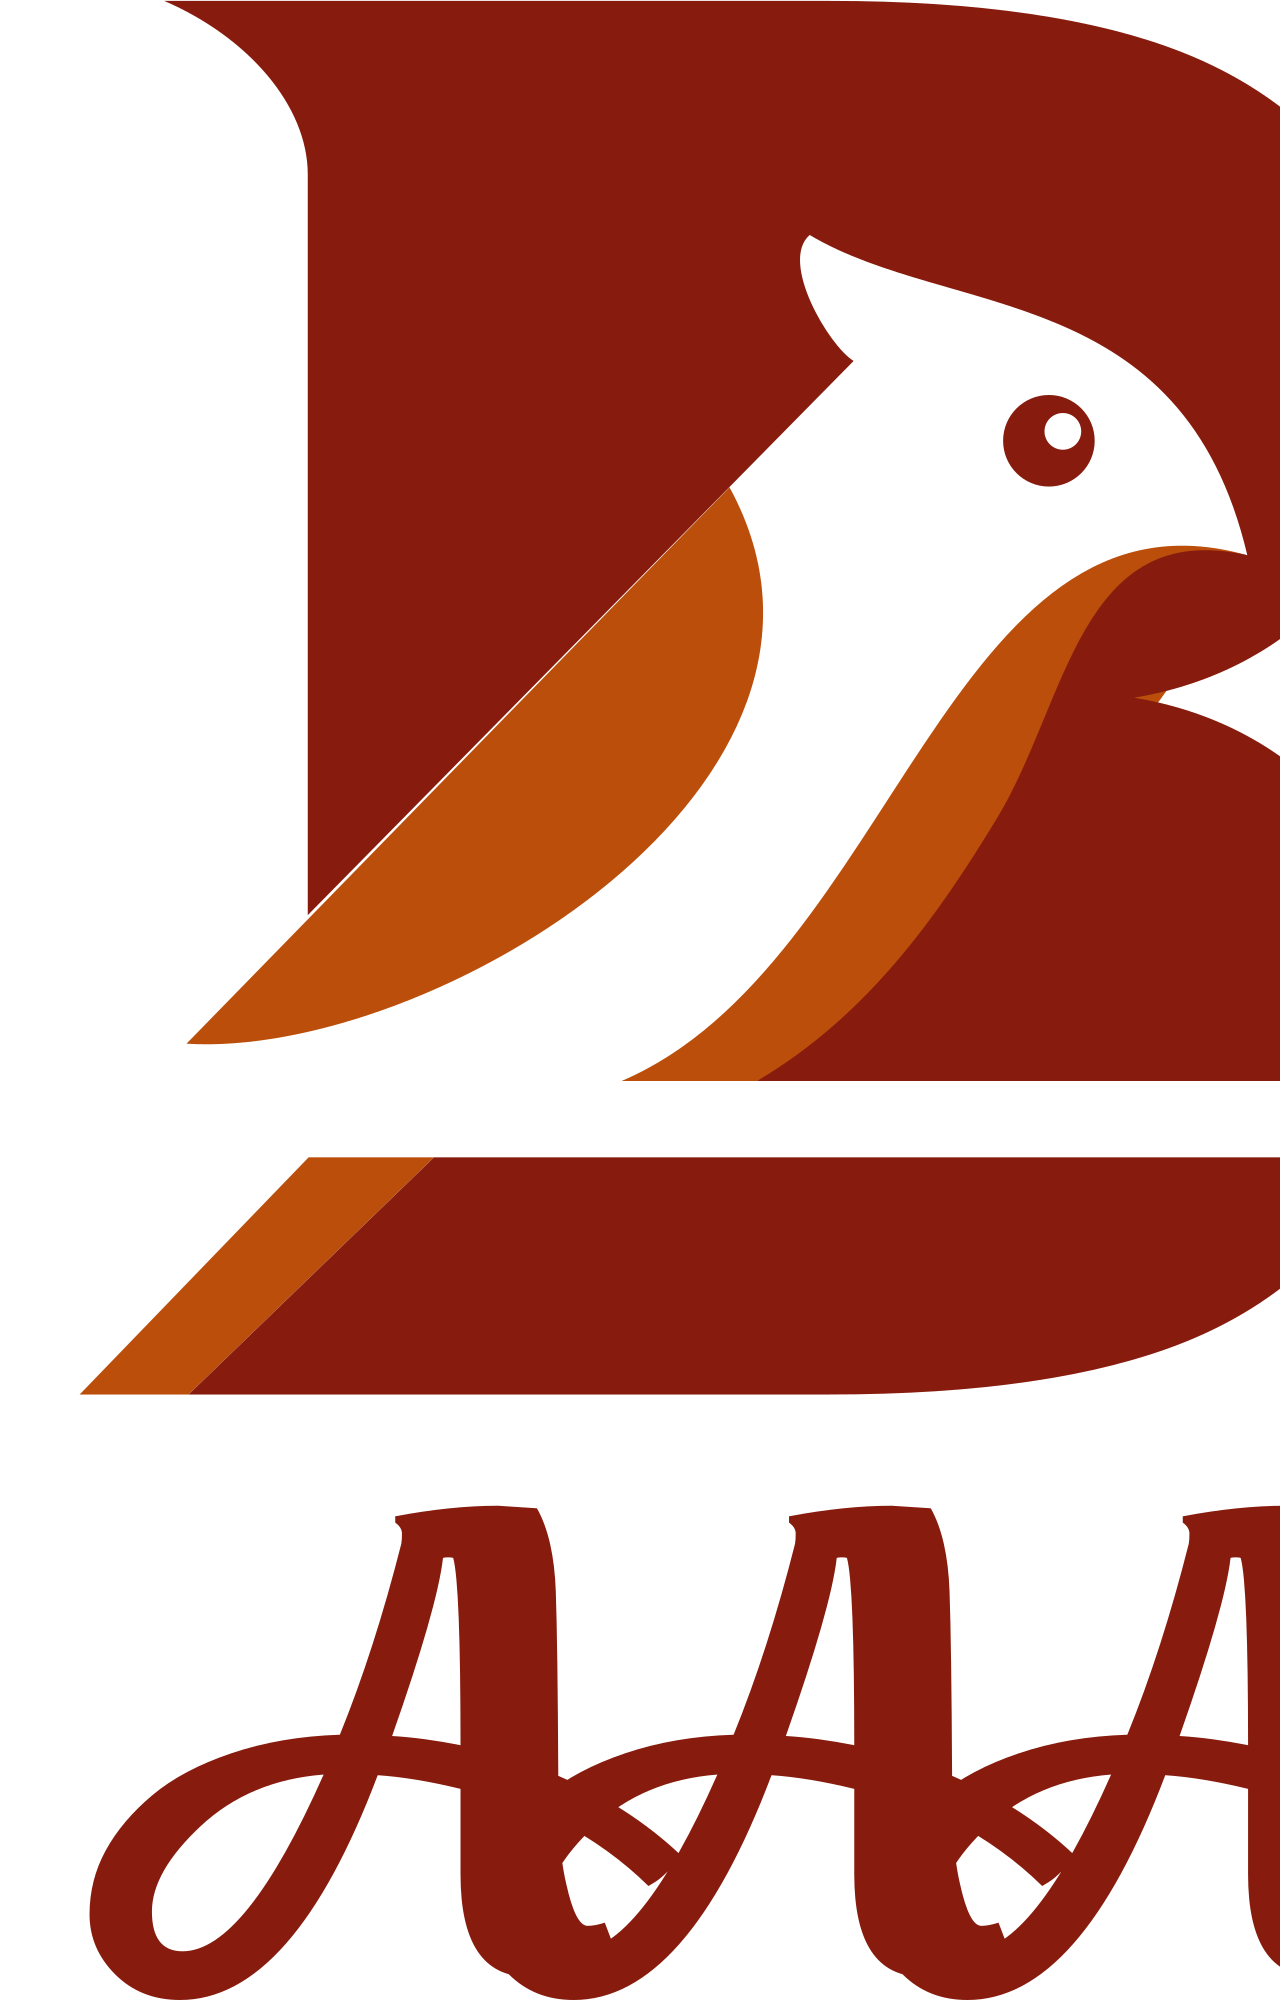 AAA's logo